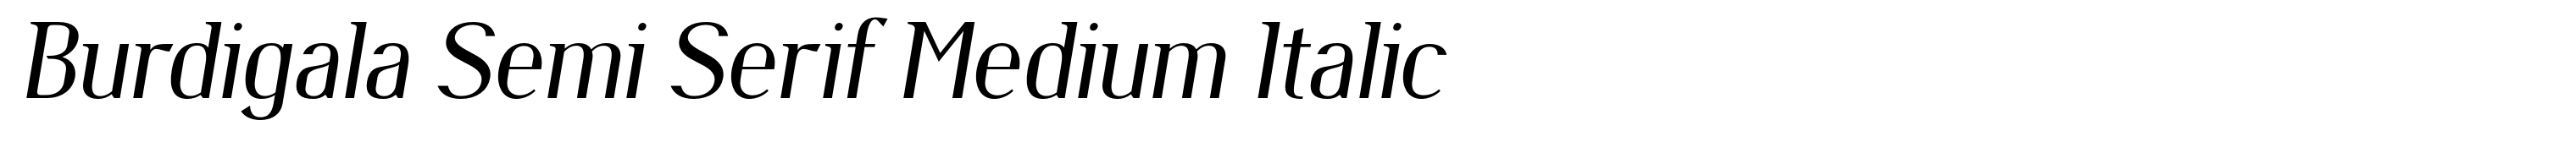 Burdigala Semi Serif Medium Italic